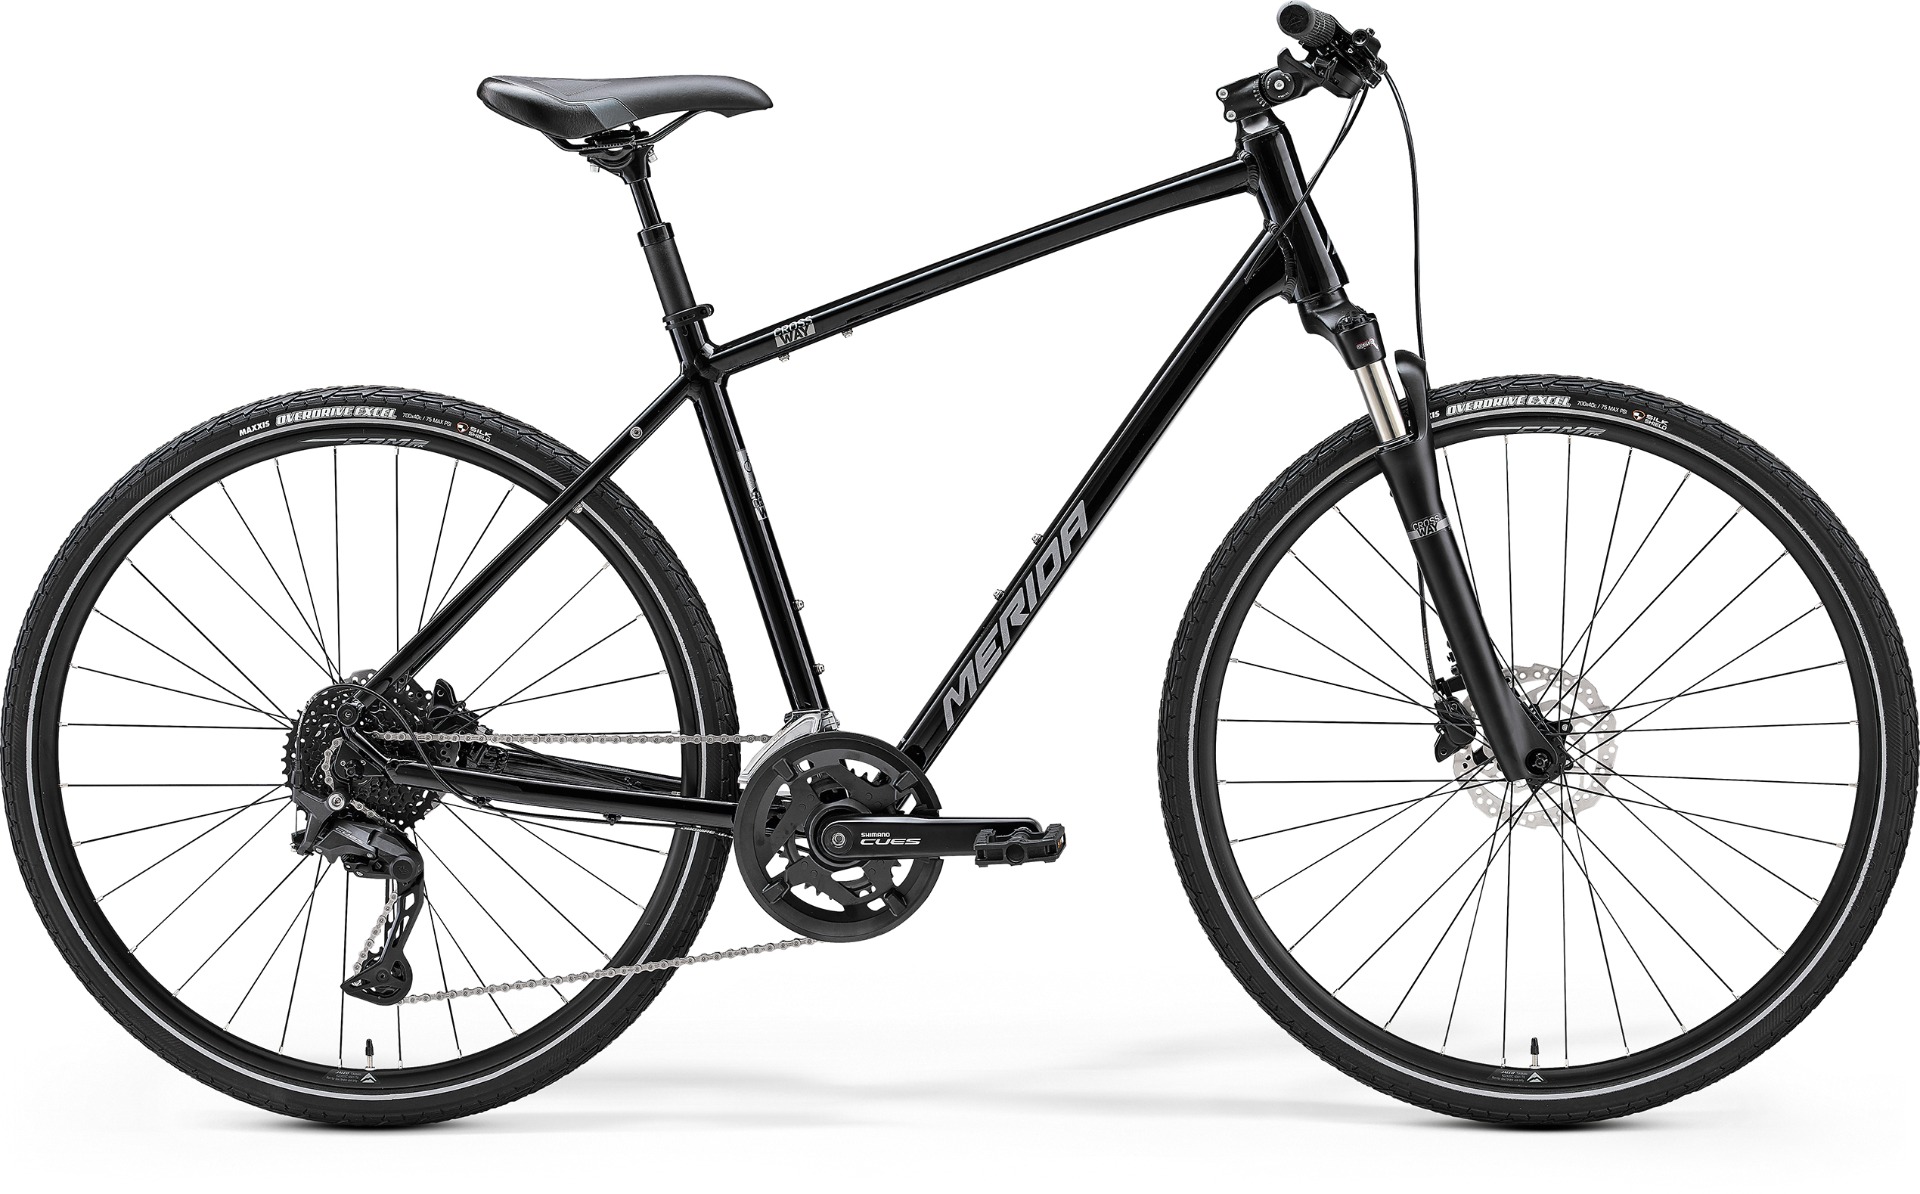 Bicycle Merida CROSSWAY 300 III2 GLOSSY BLACK(SILVER)